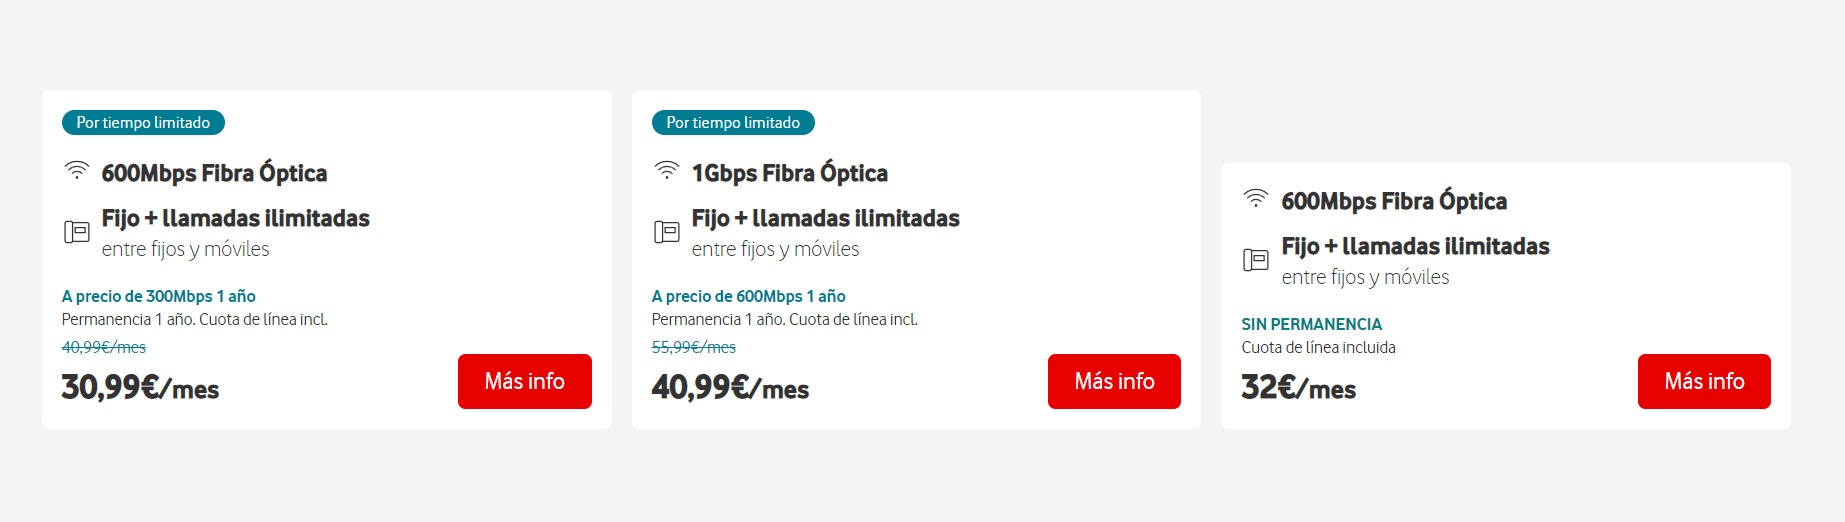 Tarifas fibra de Vodafone